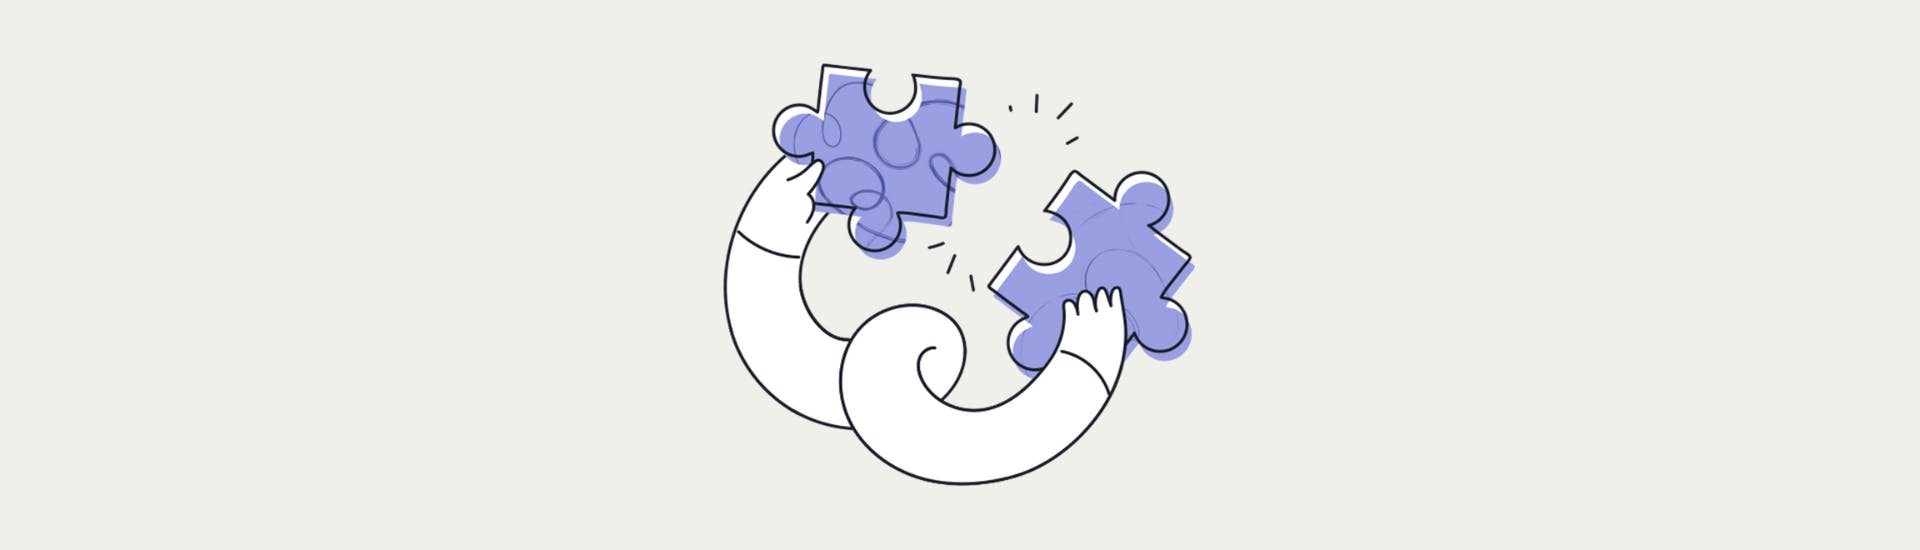 Een animatie van twee armen die puzzelstukjes vasthouden